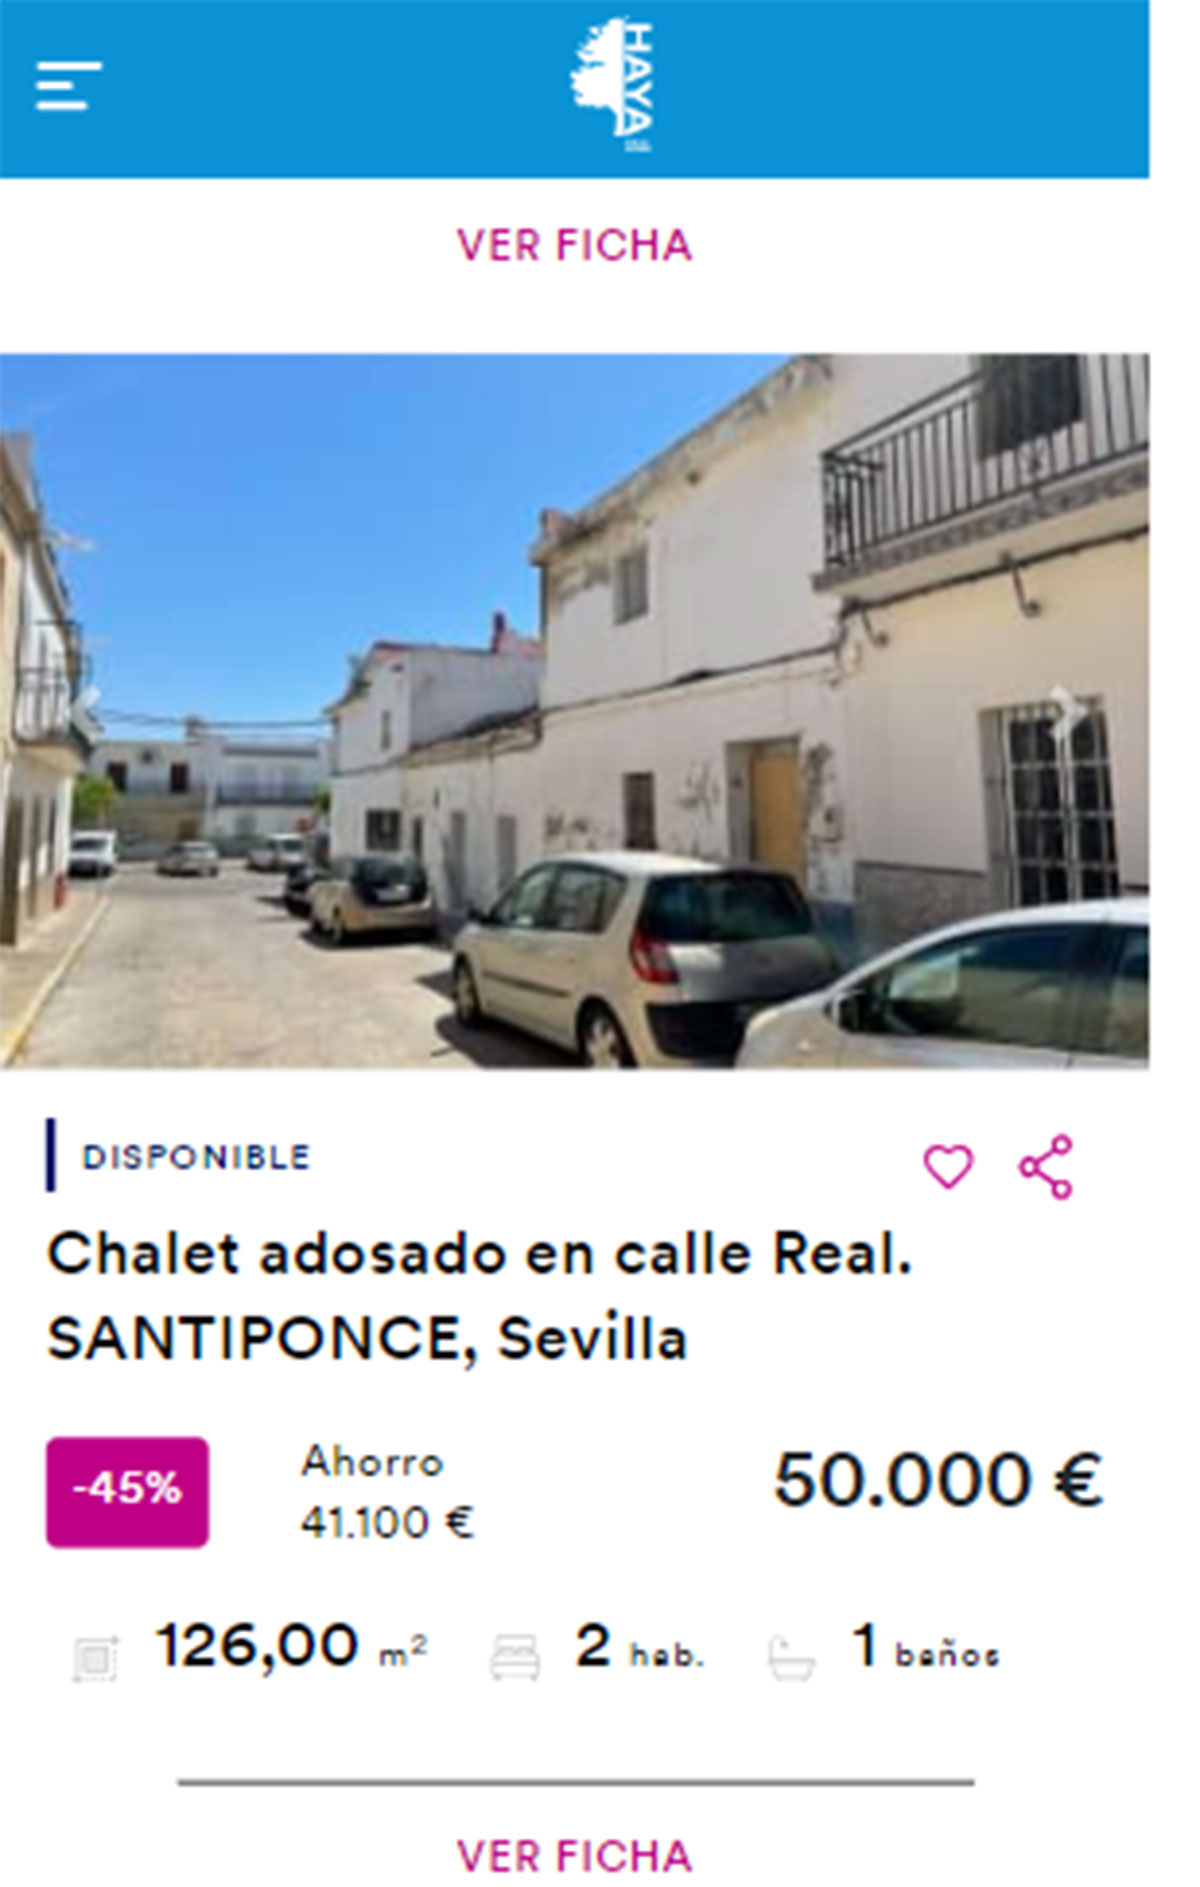 Chalet adosado en venta por 50.000 euros